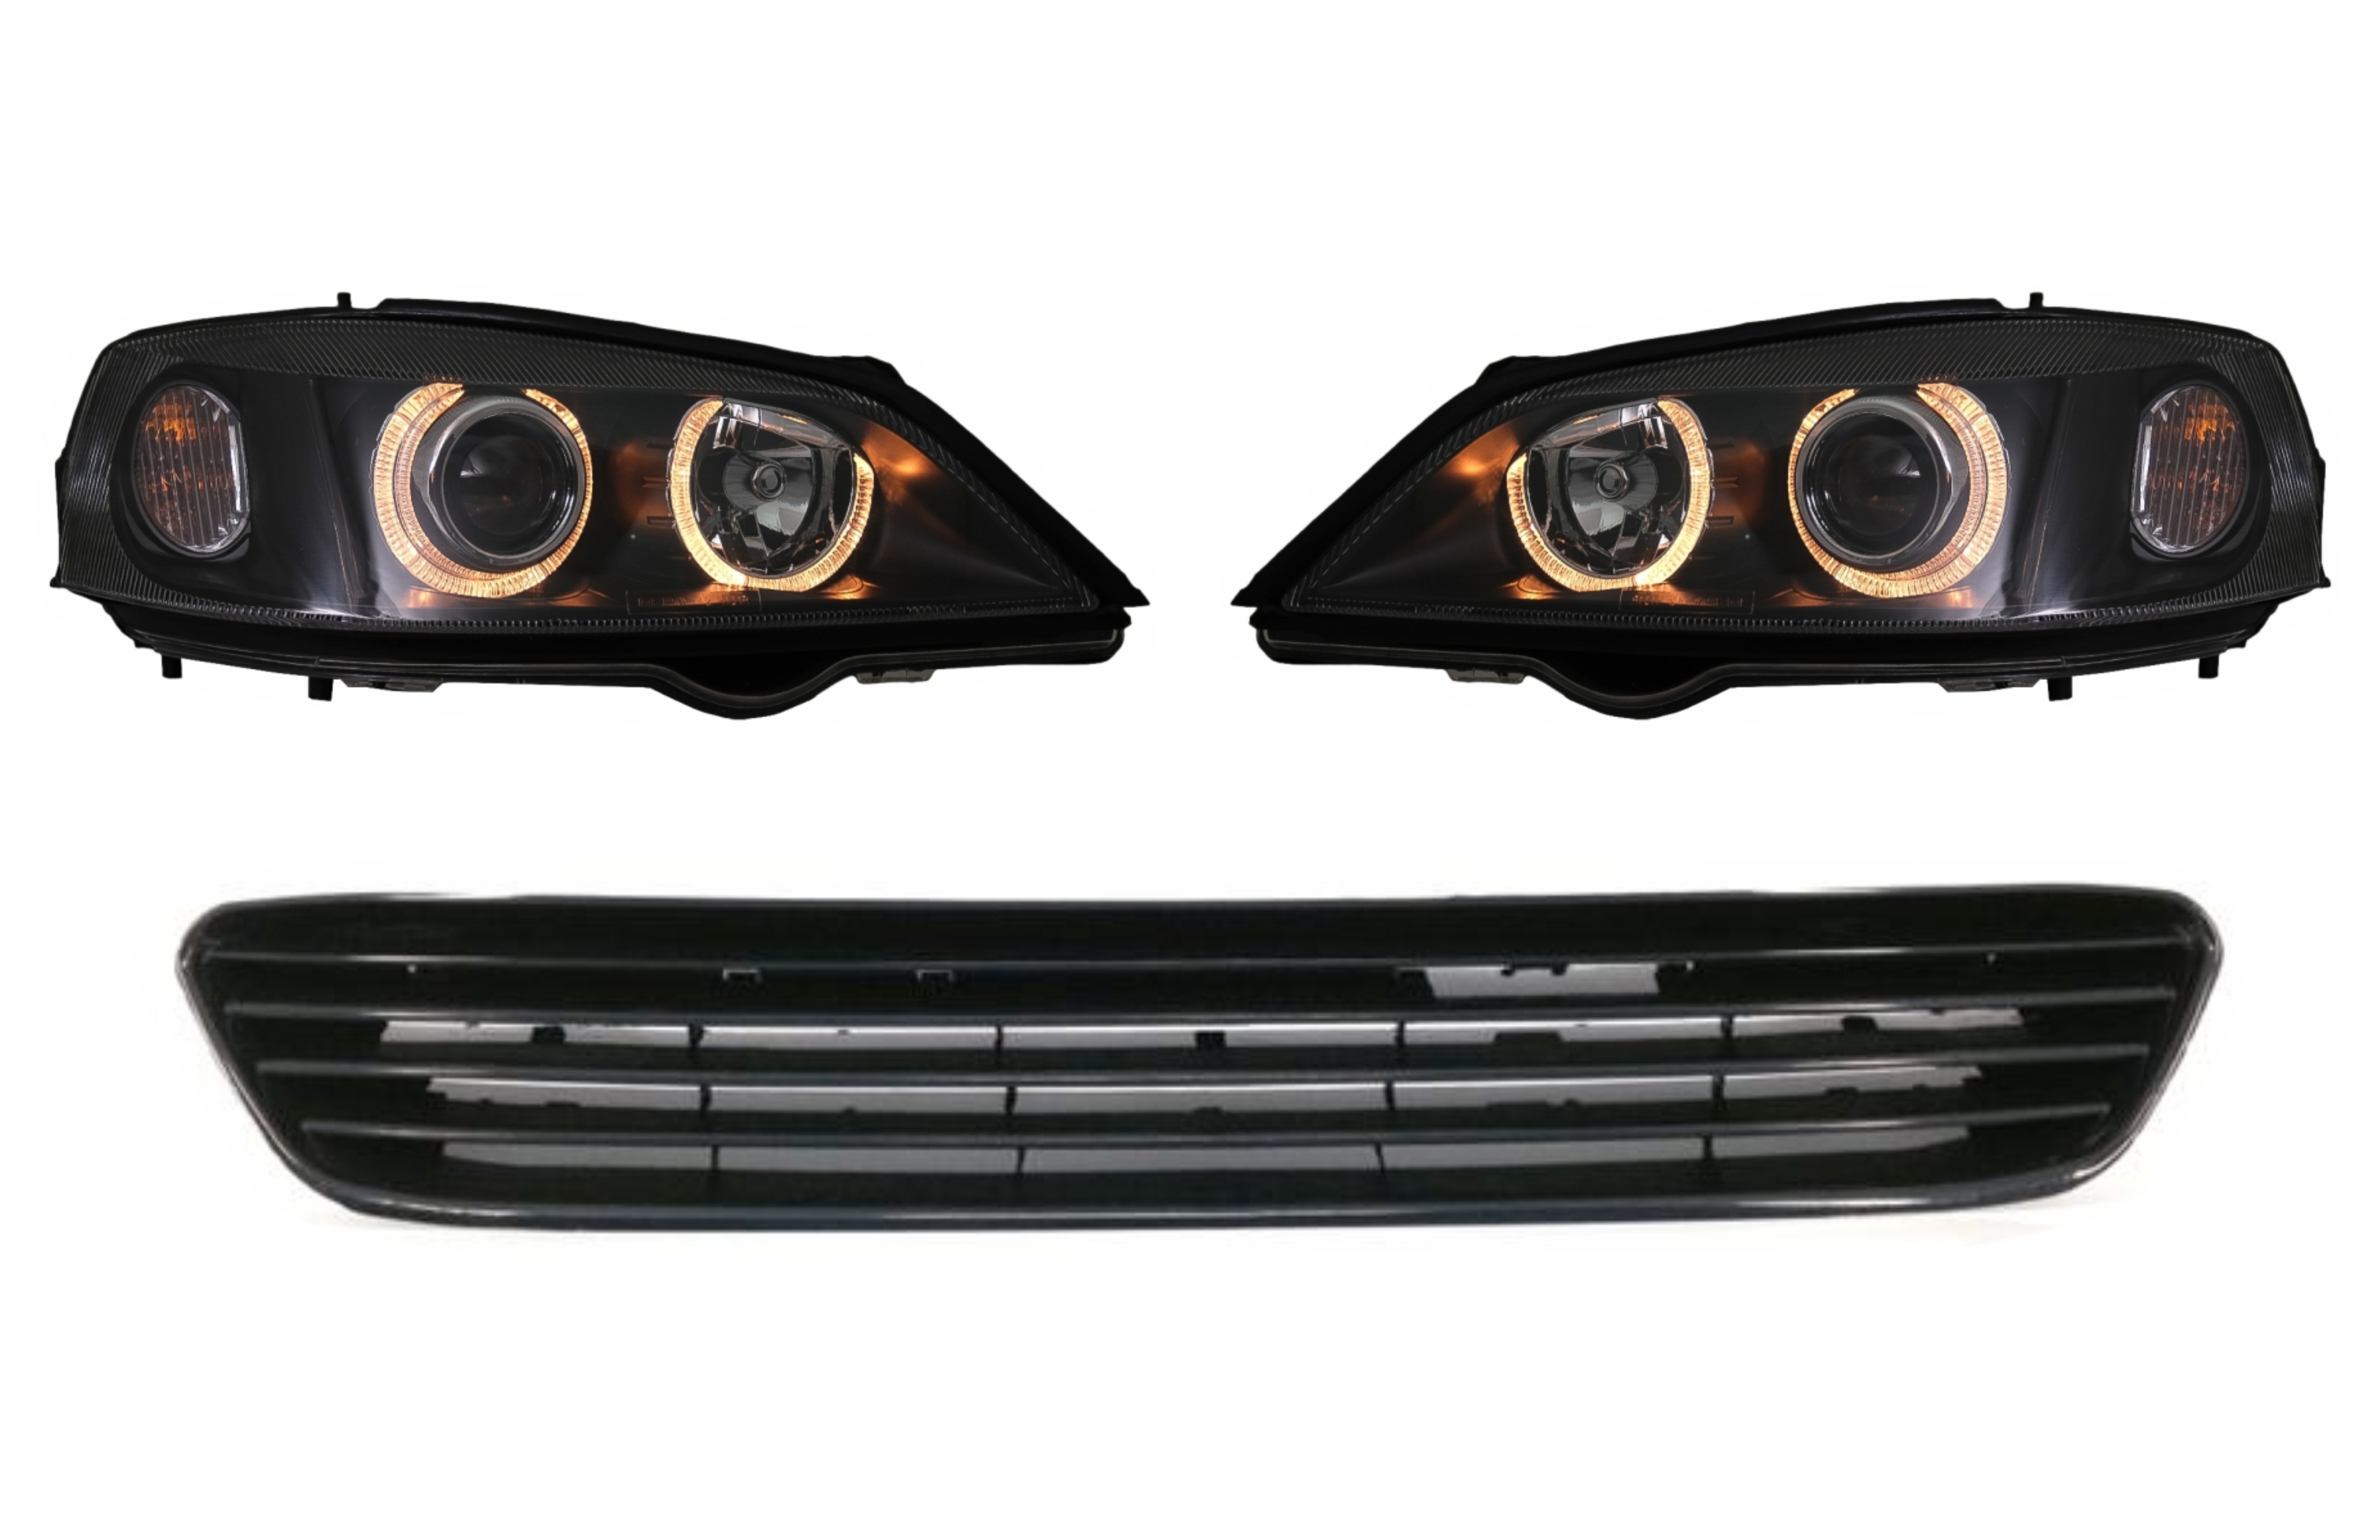 Angel Eyes fekete fényszórók jelvény nélküli első ráccsal Opel Vauxhall Astra G (1998-2004) LHD vagy RHD számára